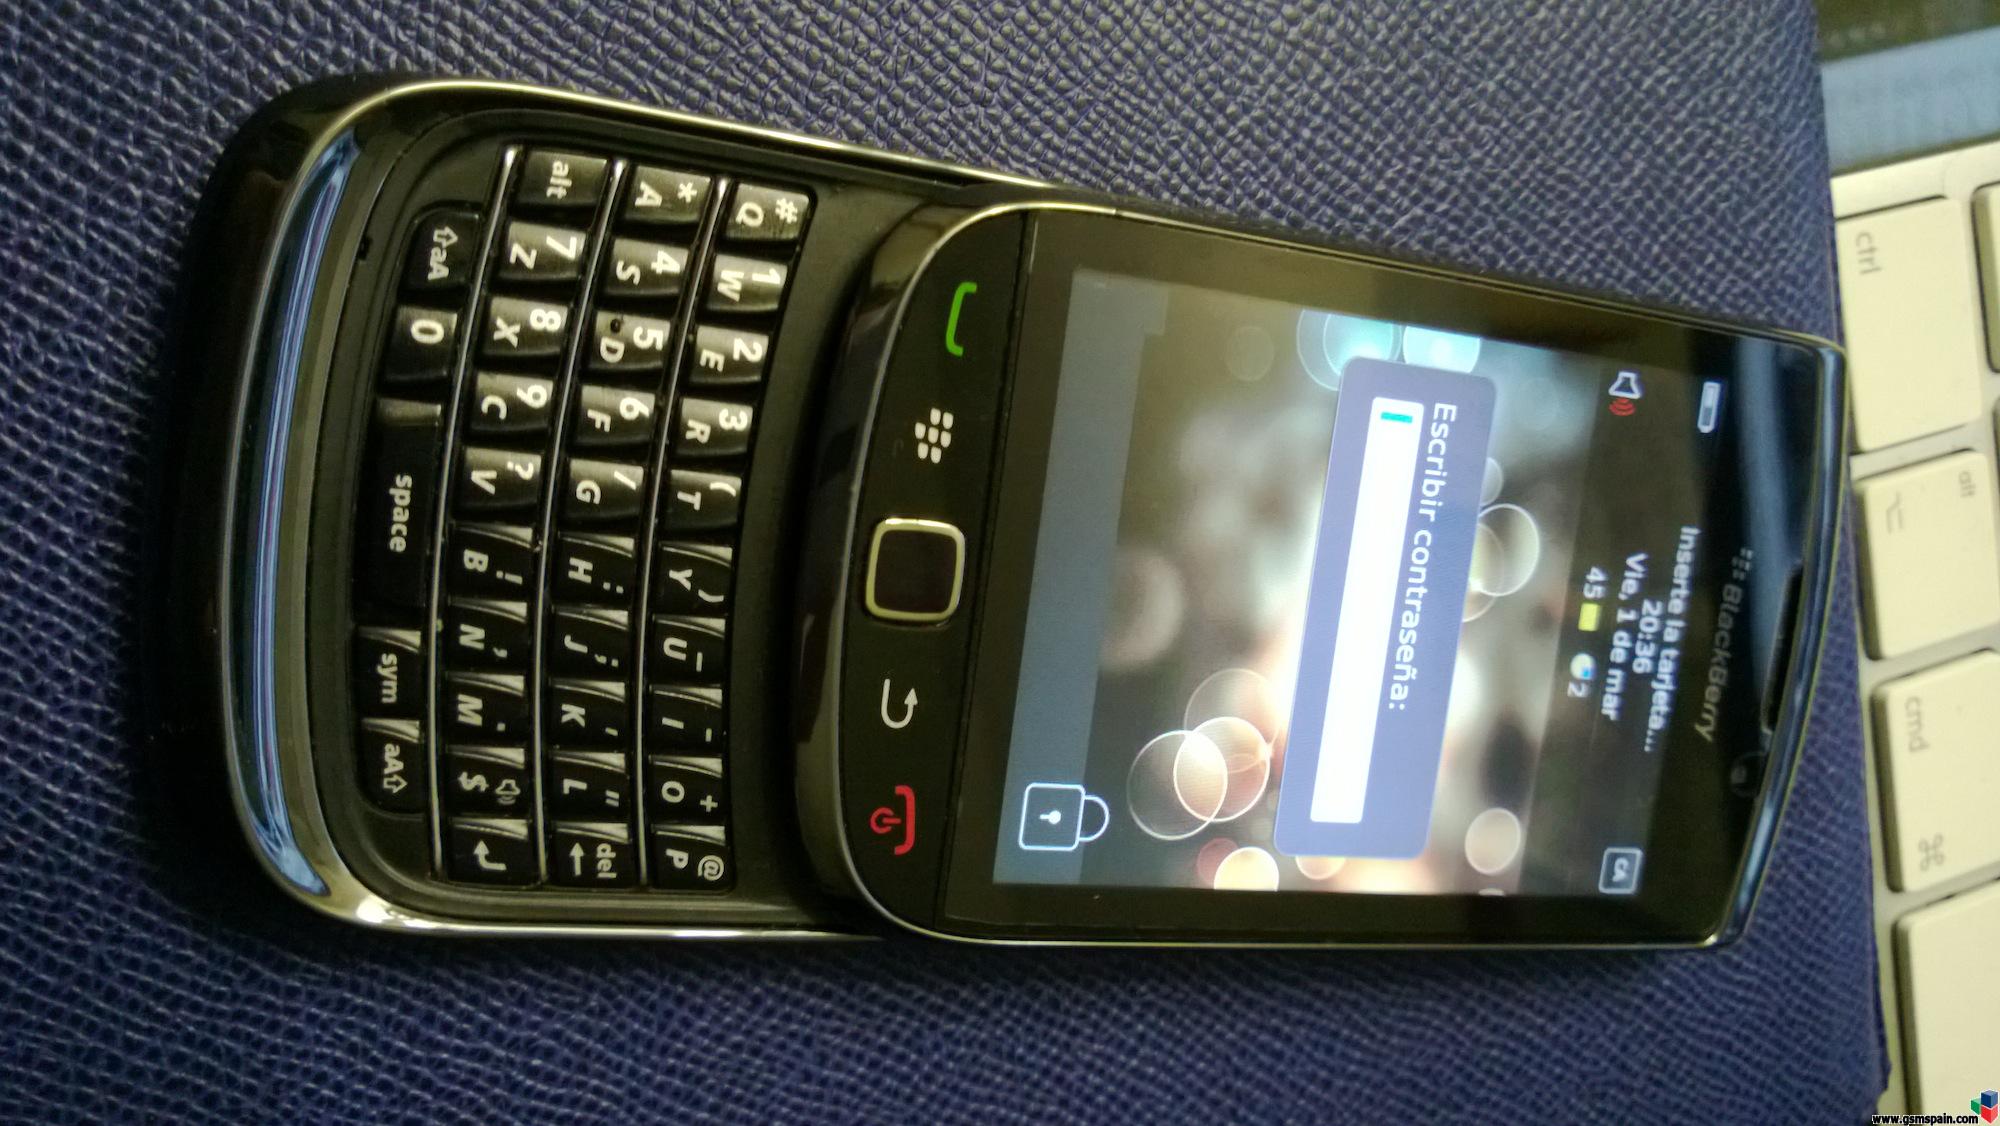 [VENDO] Blackberry torch 9800 (Barcelona)